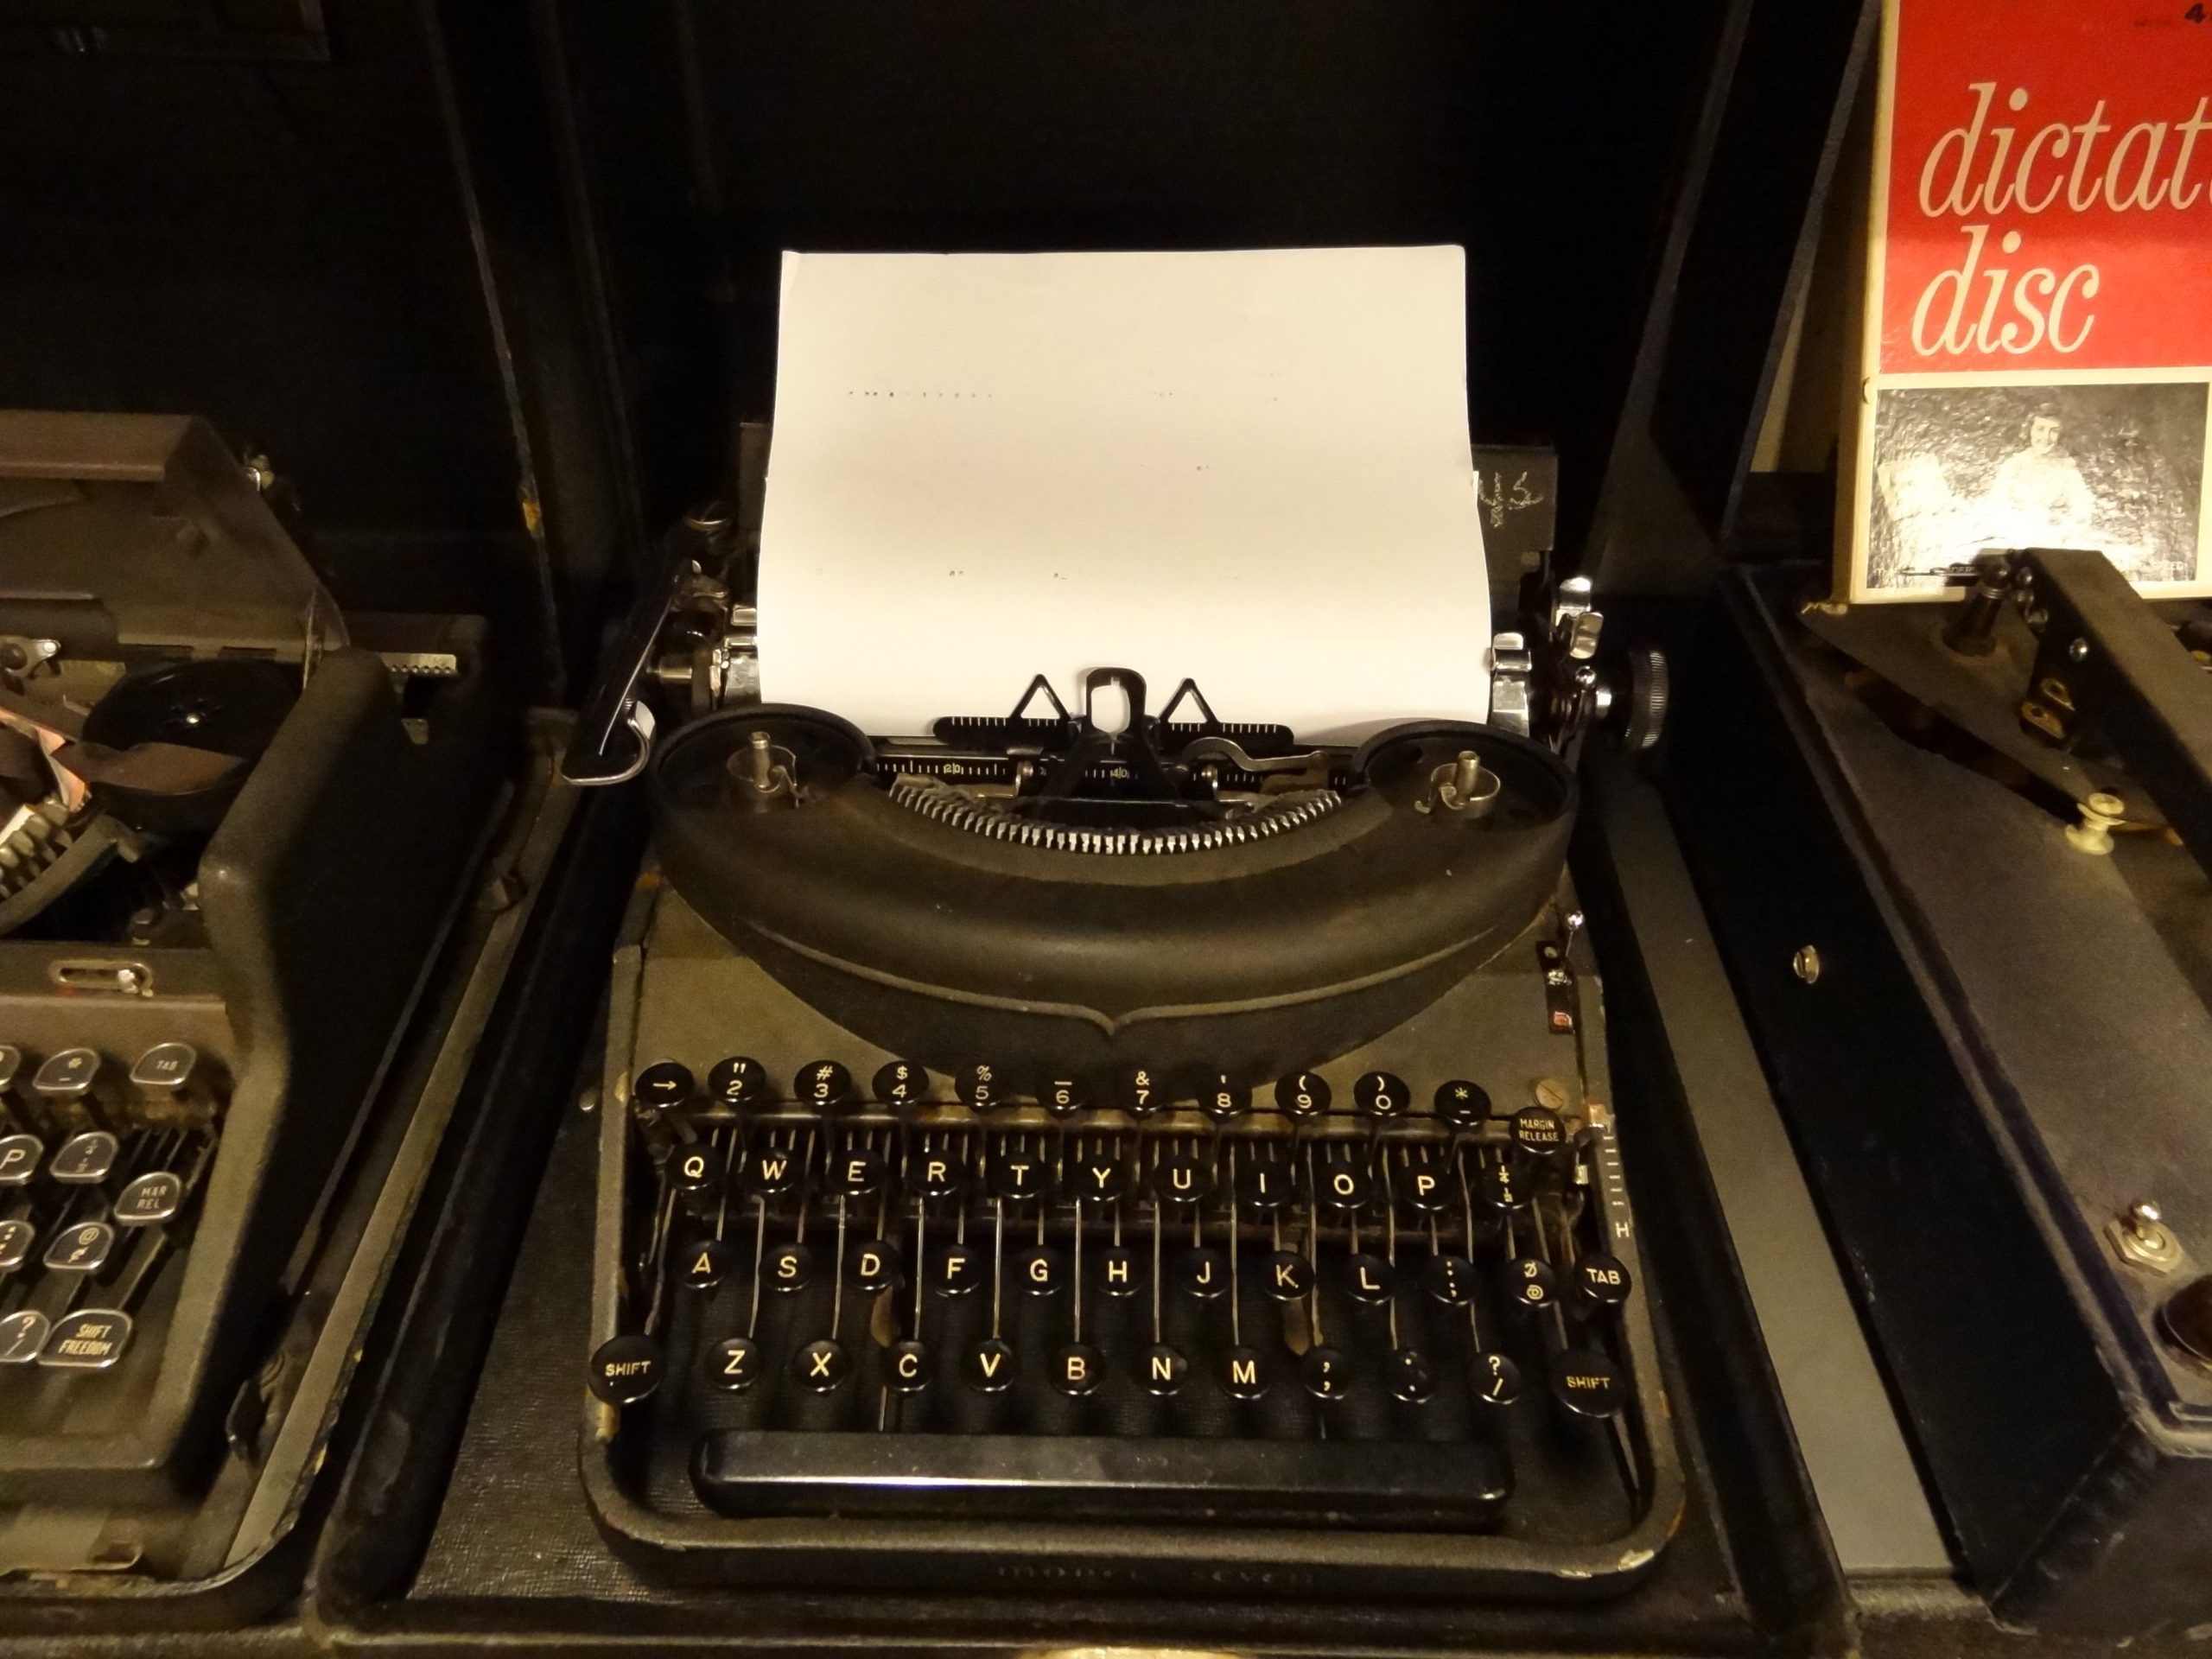 Remington Typewriter with Paper